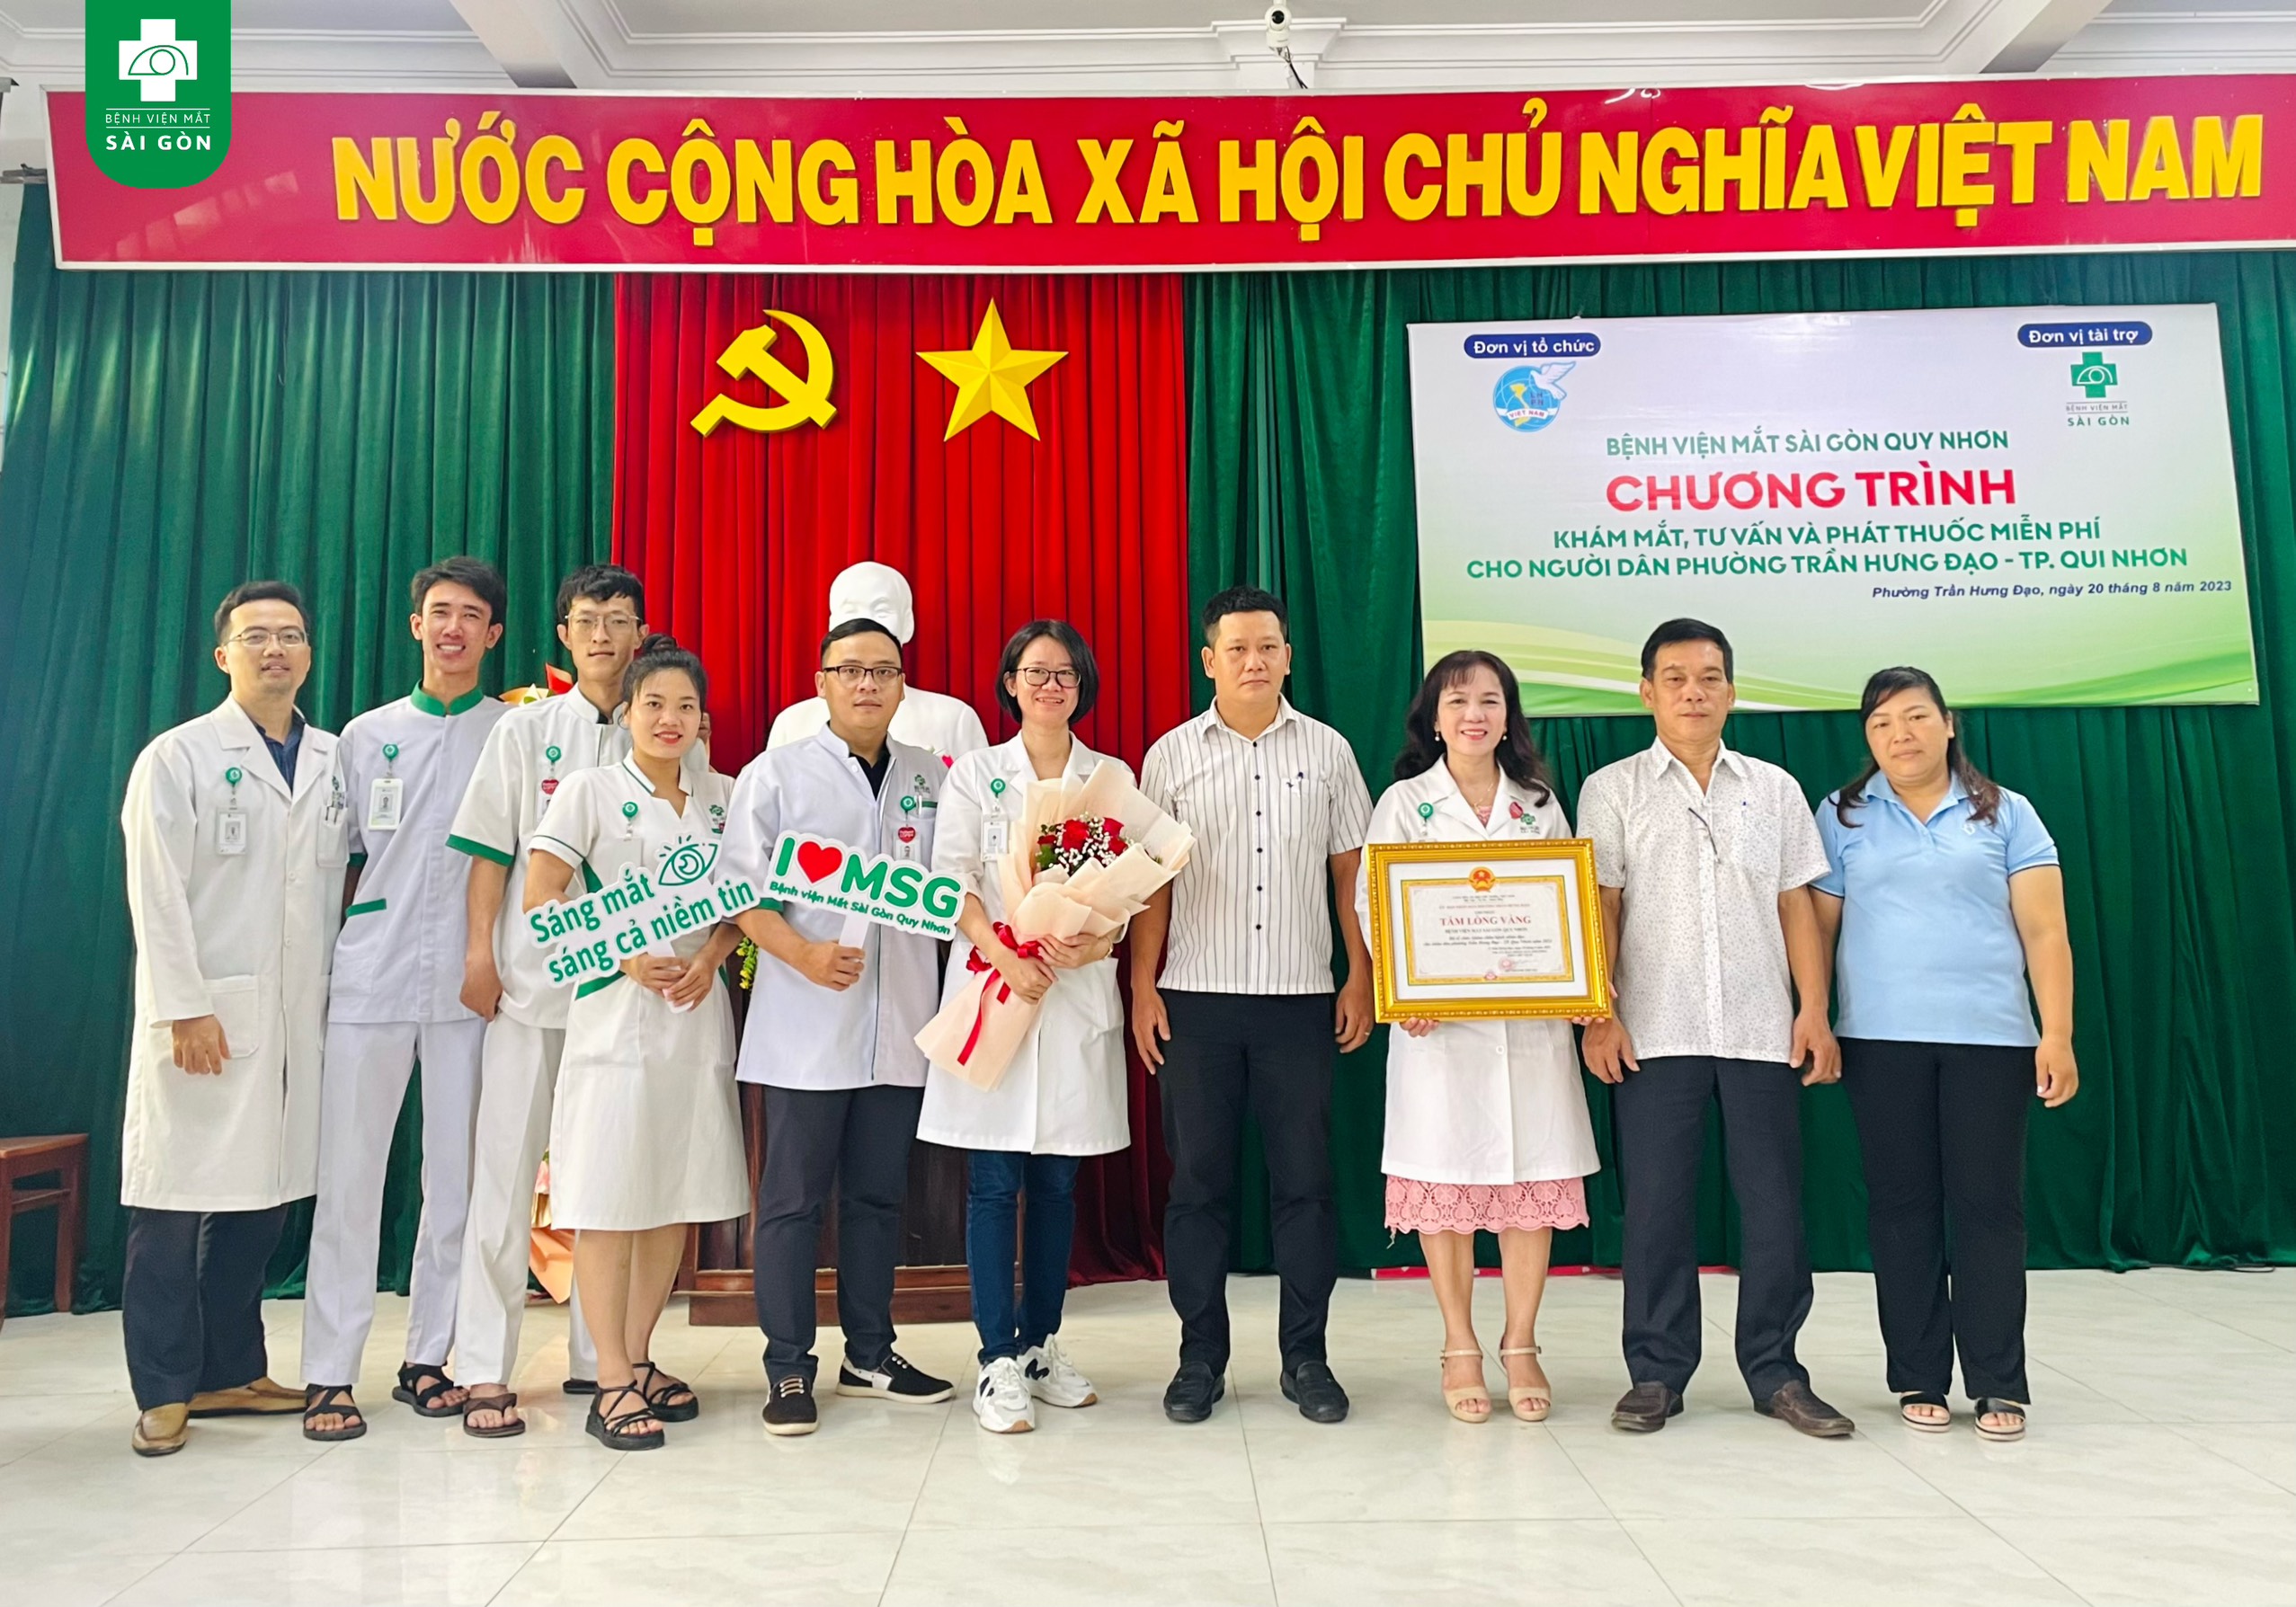 Bệnh viện Mắt Sài Gòn Quy Nhơn tiếp tục hành trình trao yêu thương đến phường Trần Hưng Đạo - Hơn 200 người dân tại đây được khám tầm soát và cấp phát thuốc miễn phí.